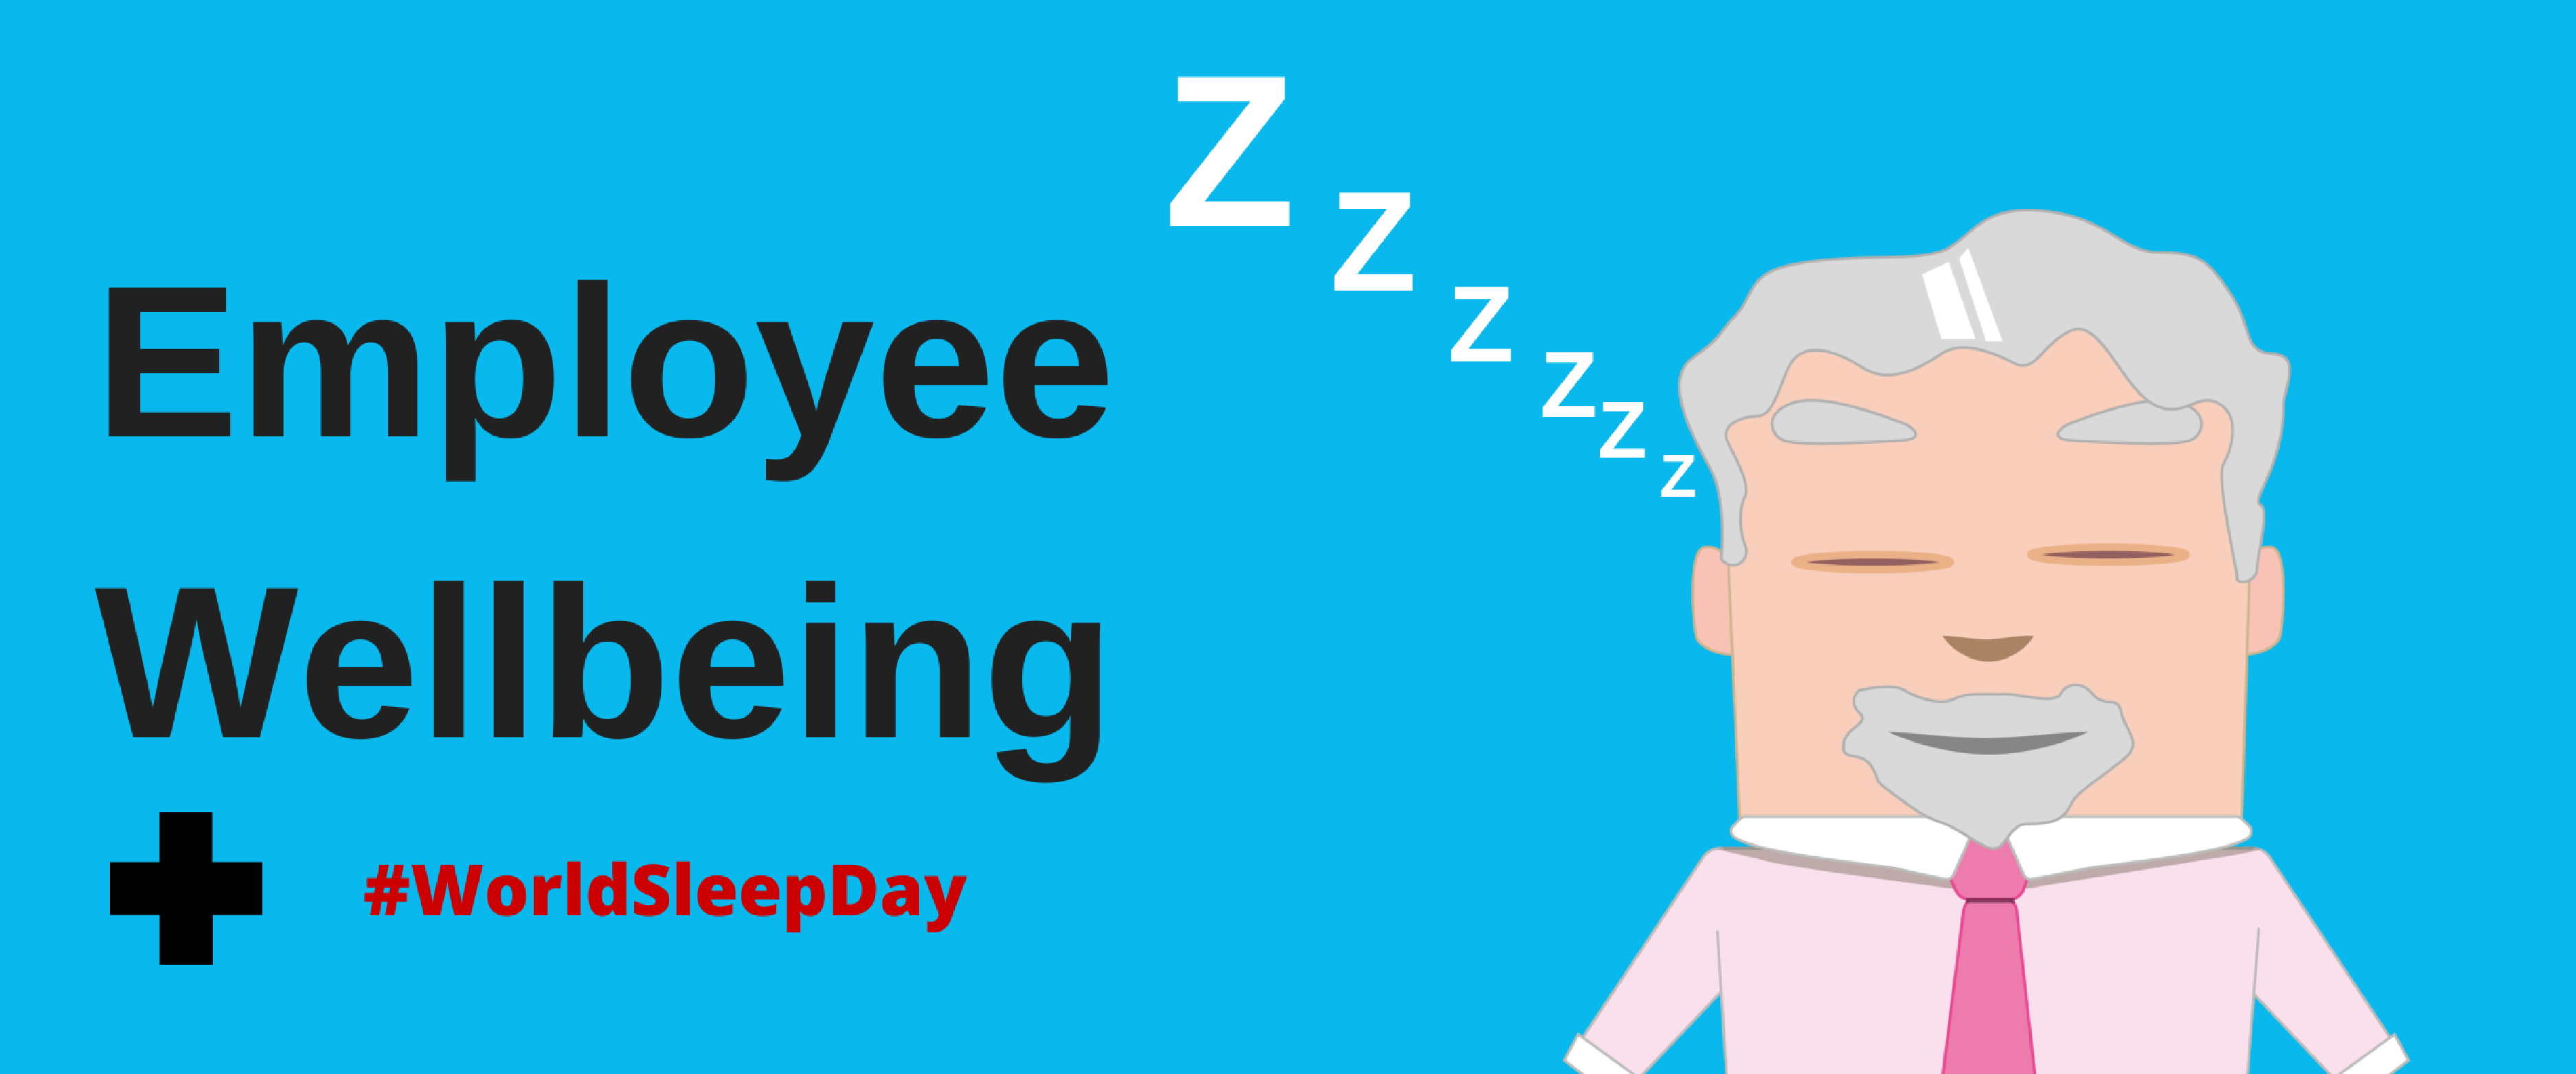 World Sleep Day Staff Wellbeing